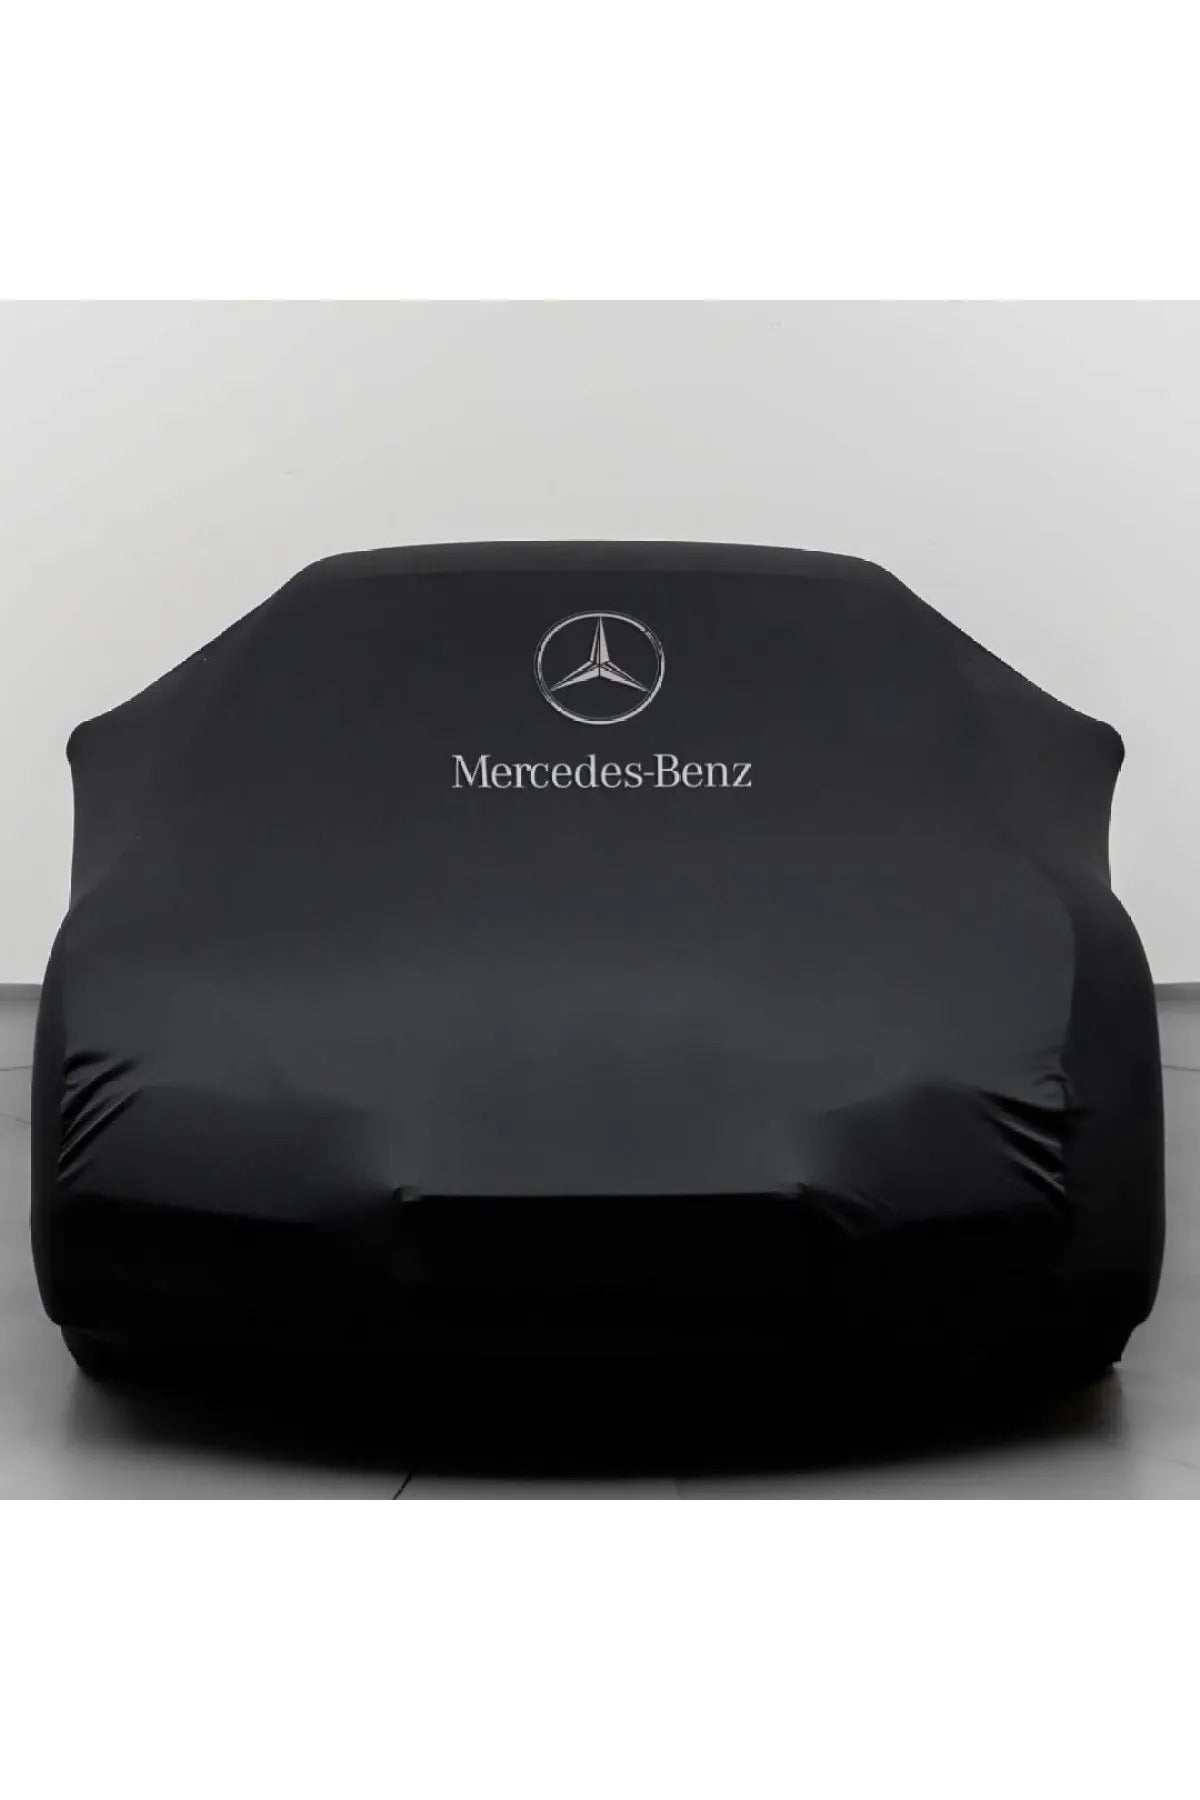 2023 Mercedes-Benz S-Class Sedan Custom Fit Indoor Car Cover